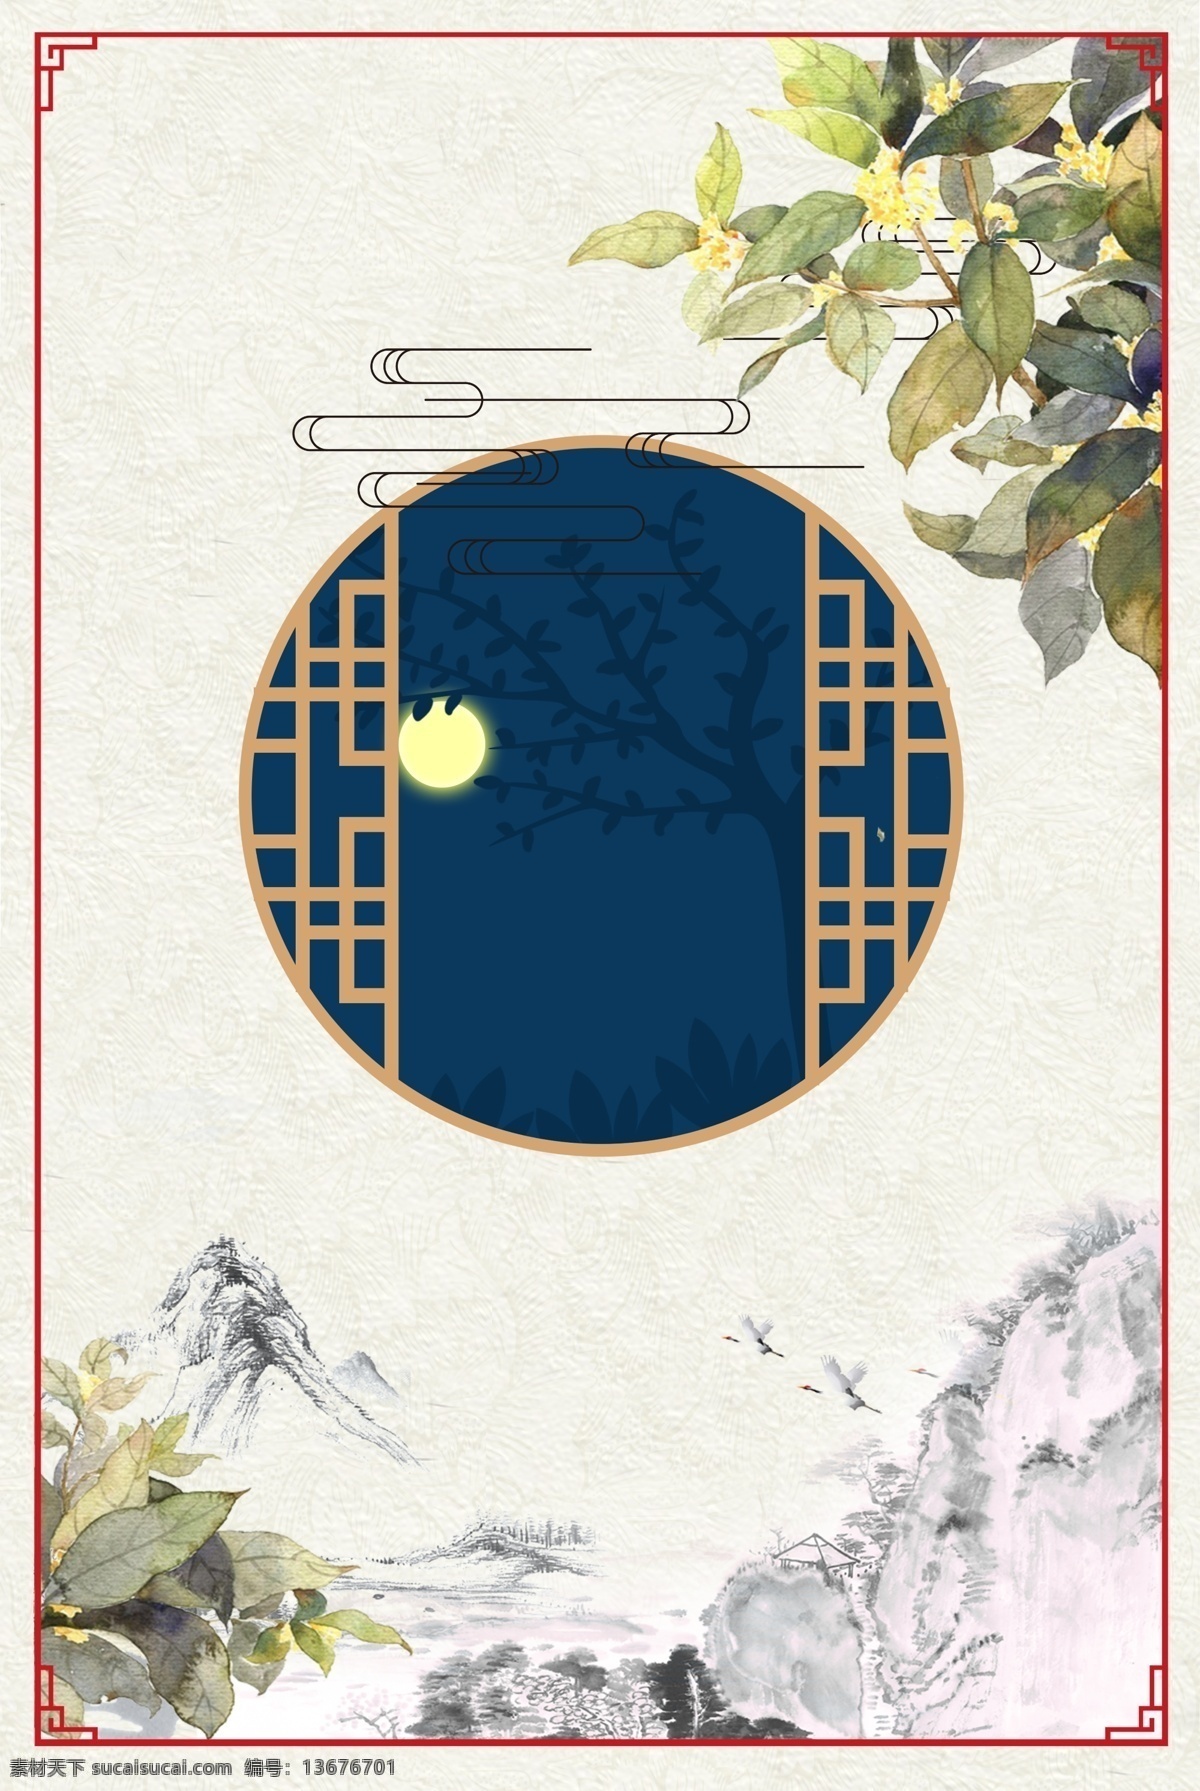 传统 中秋节 节日 背景 创意 植物 叶子 环境 边框 水墨 淡雅